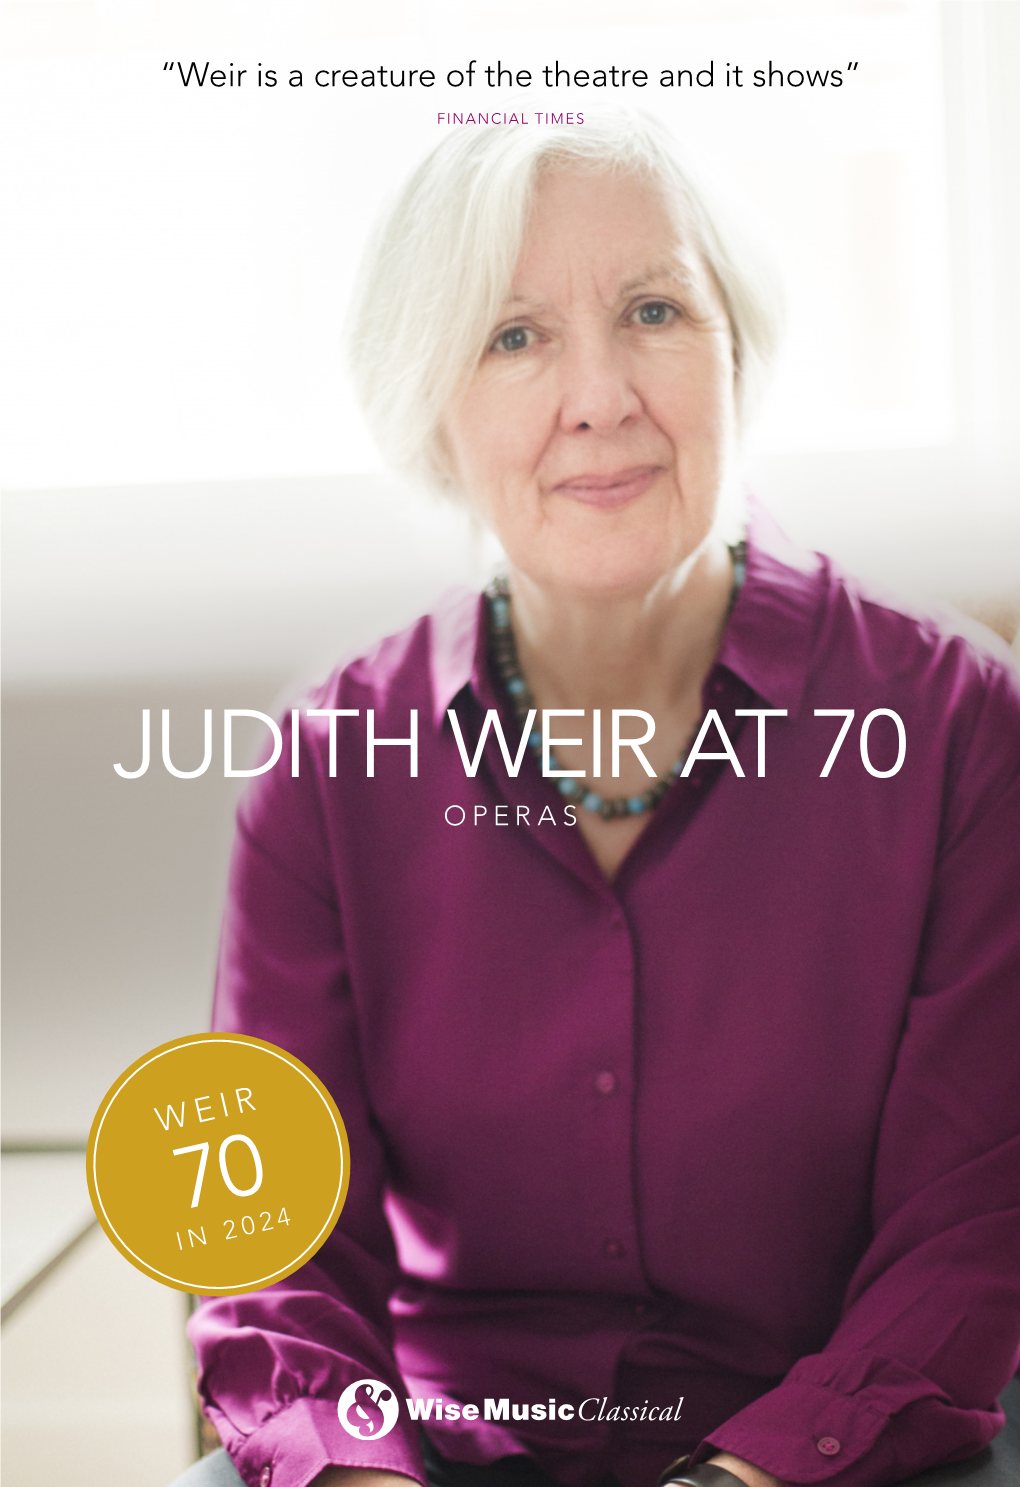 Judith Weir at 70 Operas